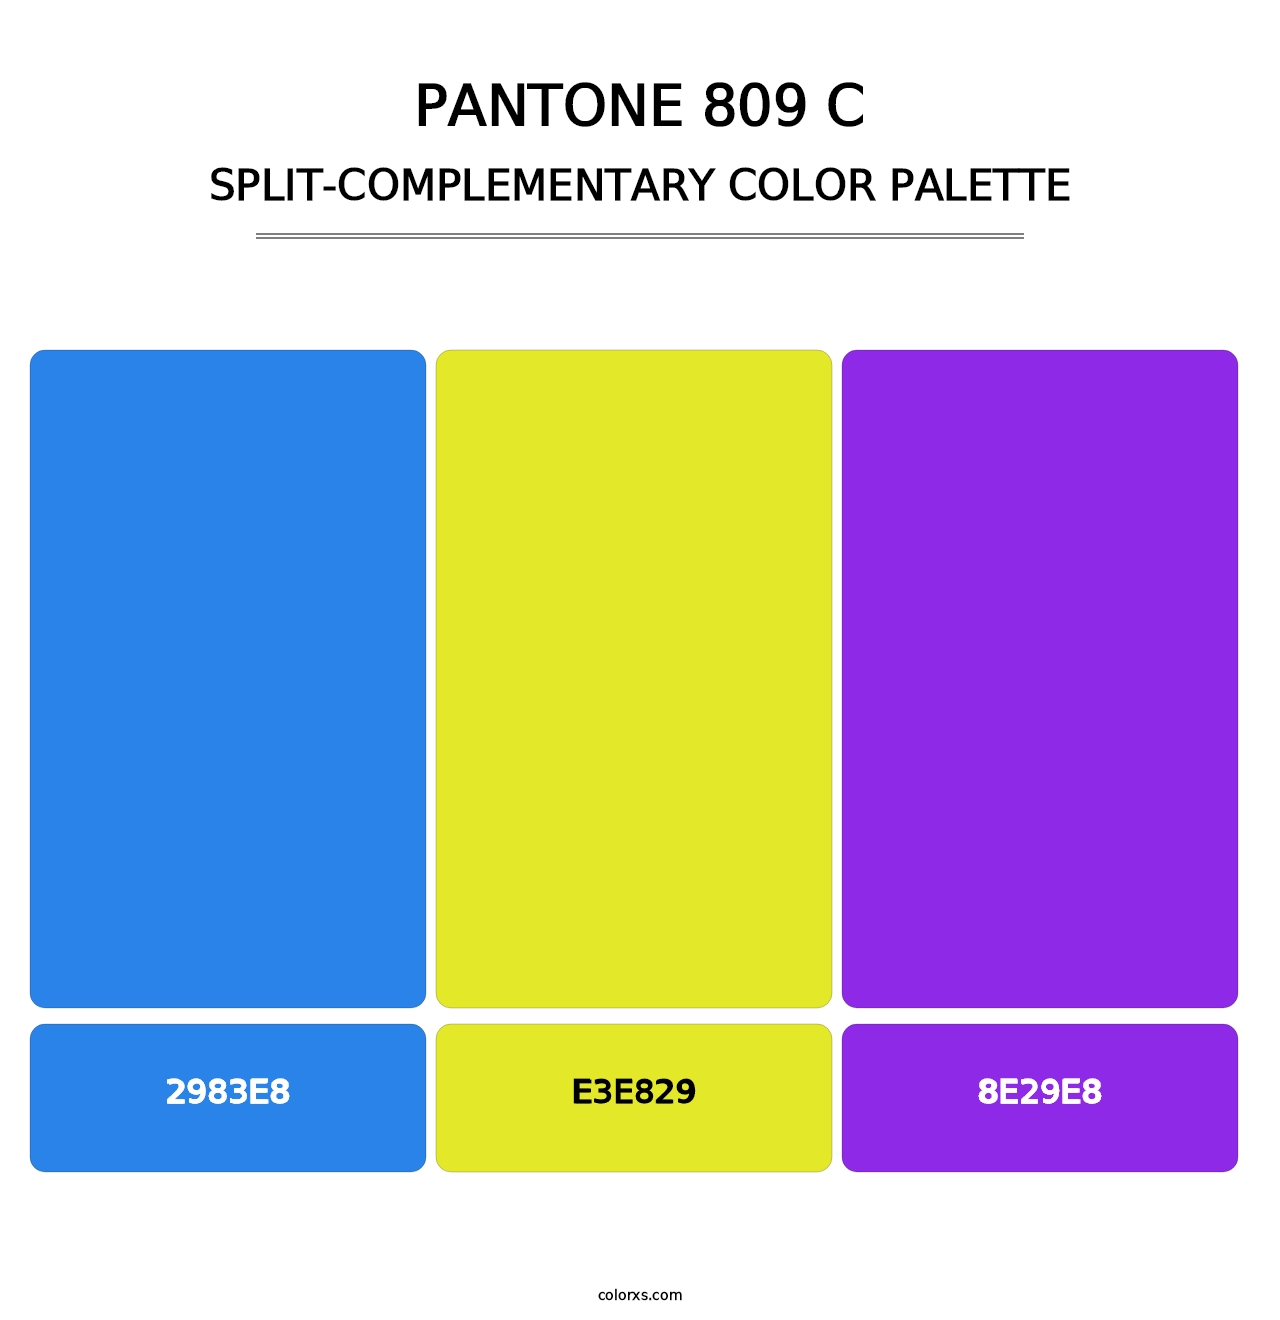 PANTONE 809 C - Split-Complementary Color Palette